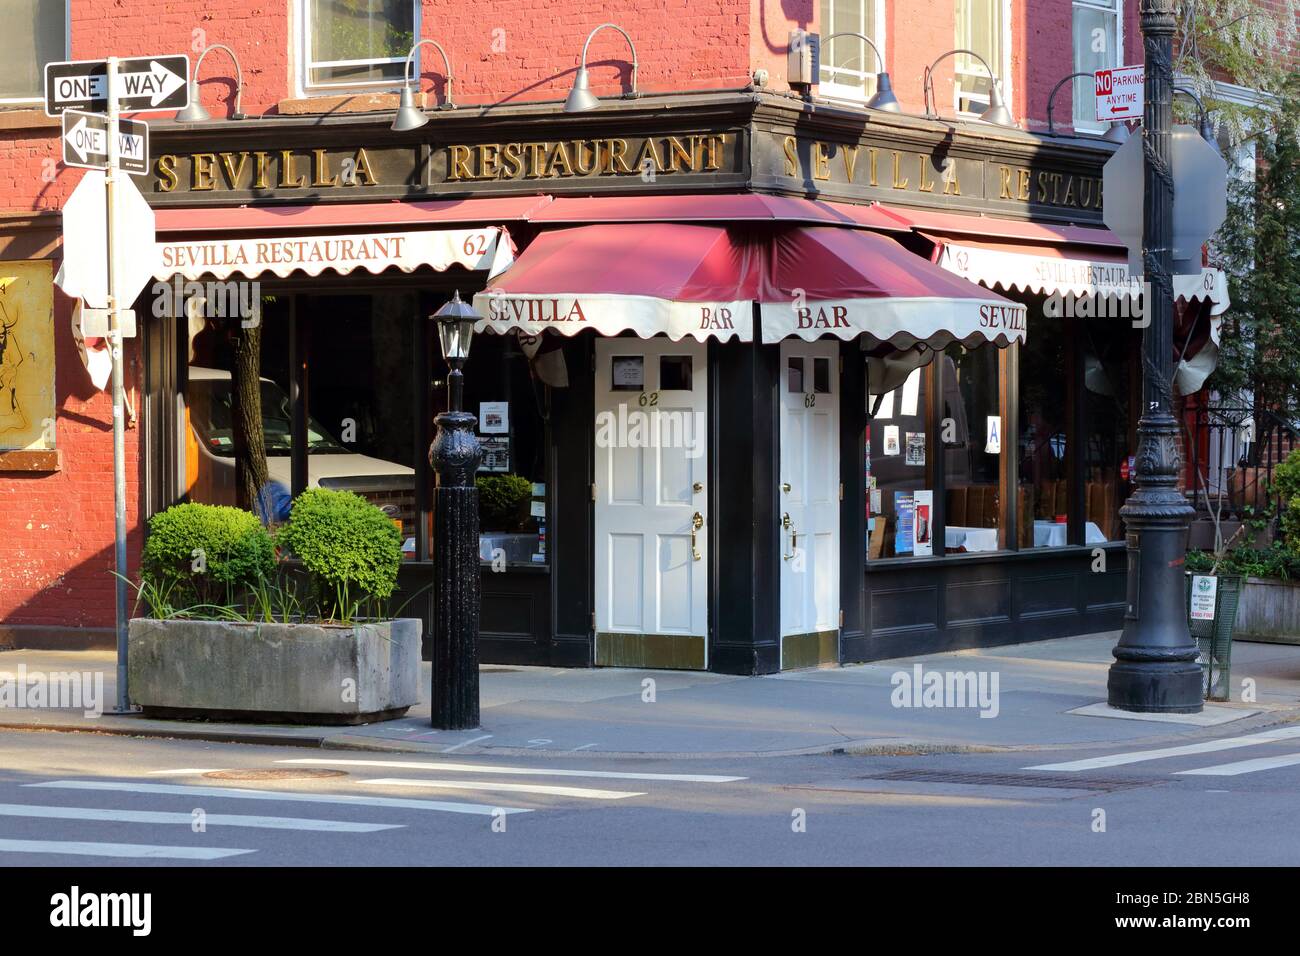 Sevilla Restaurant, 62 Charles Street, New York, NYC Foto von einem spanischen Restaurant im Stadtteil Greenwich Village in Manhattan. Stockfoto